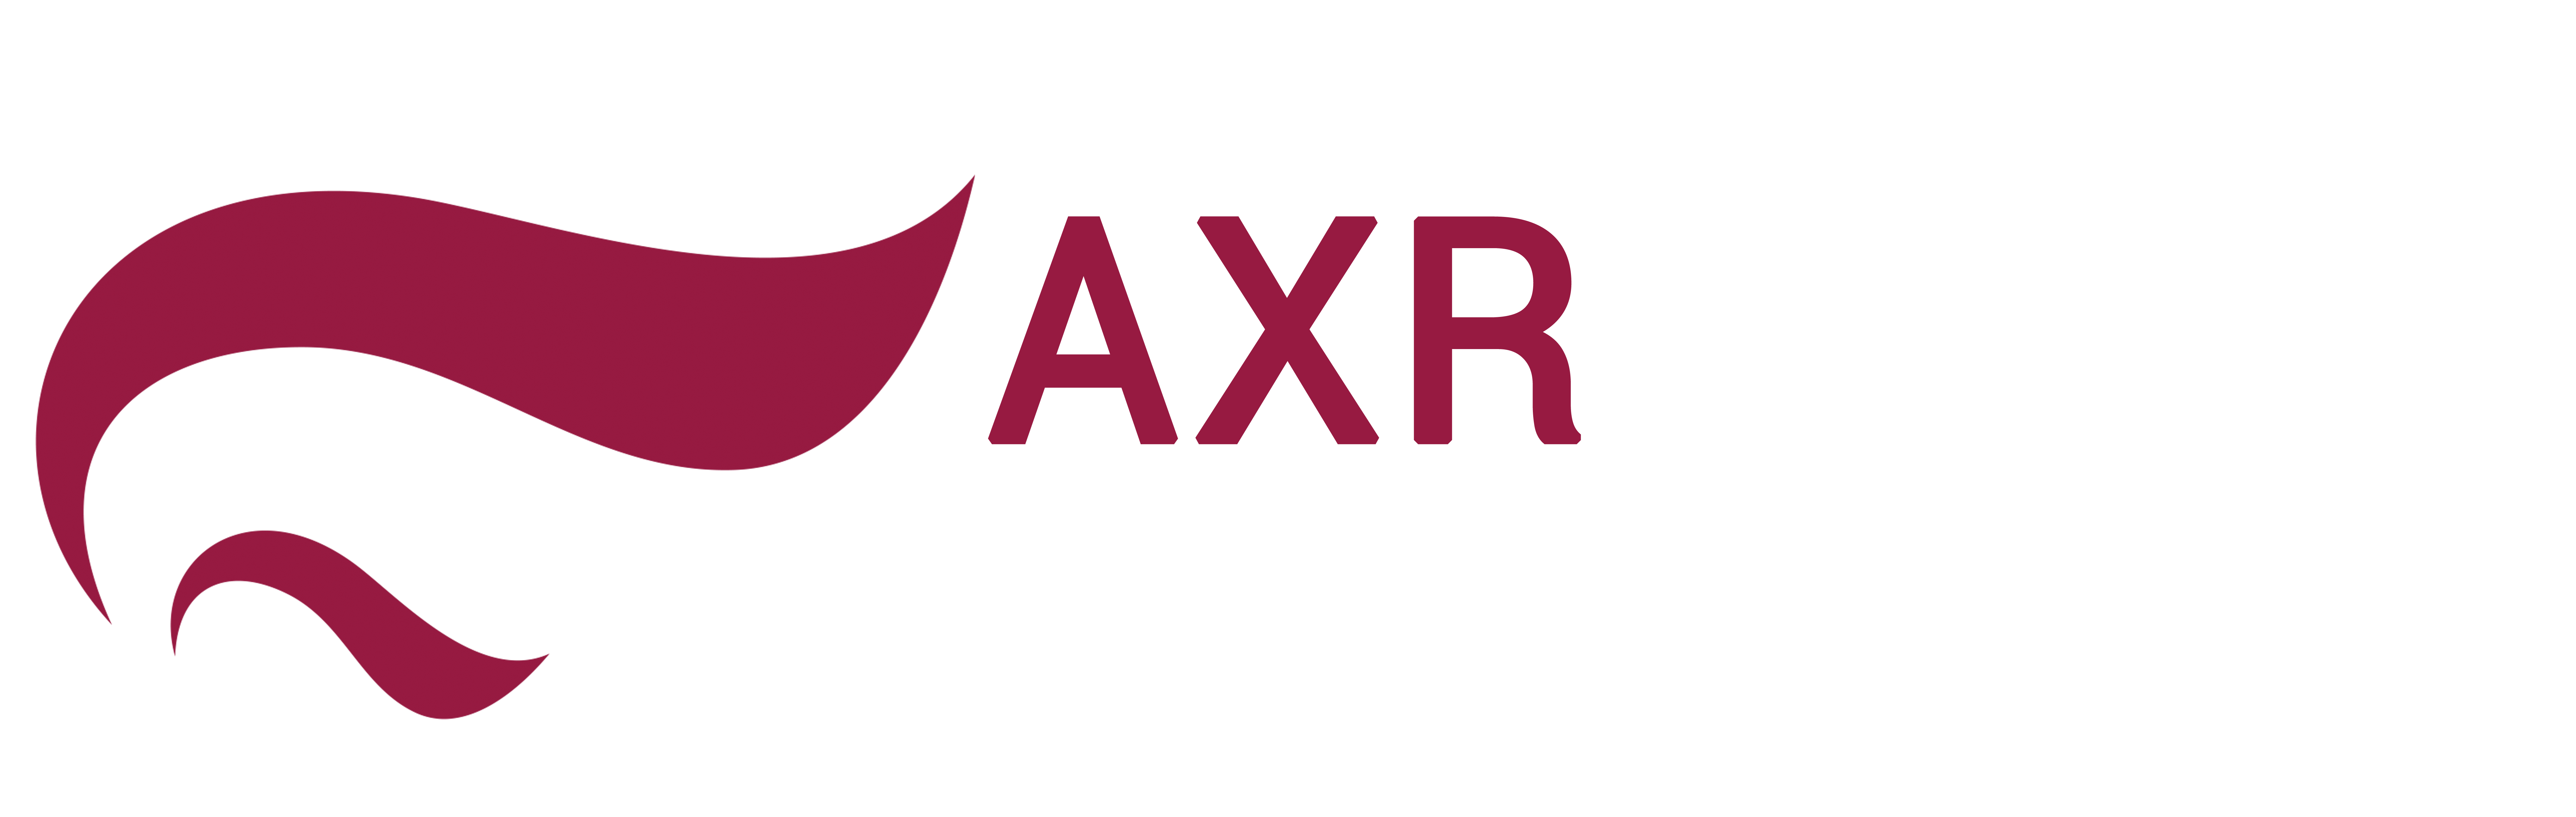 AXR